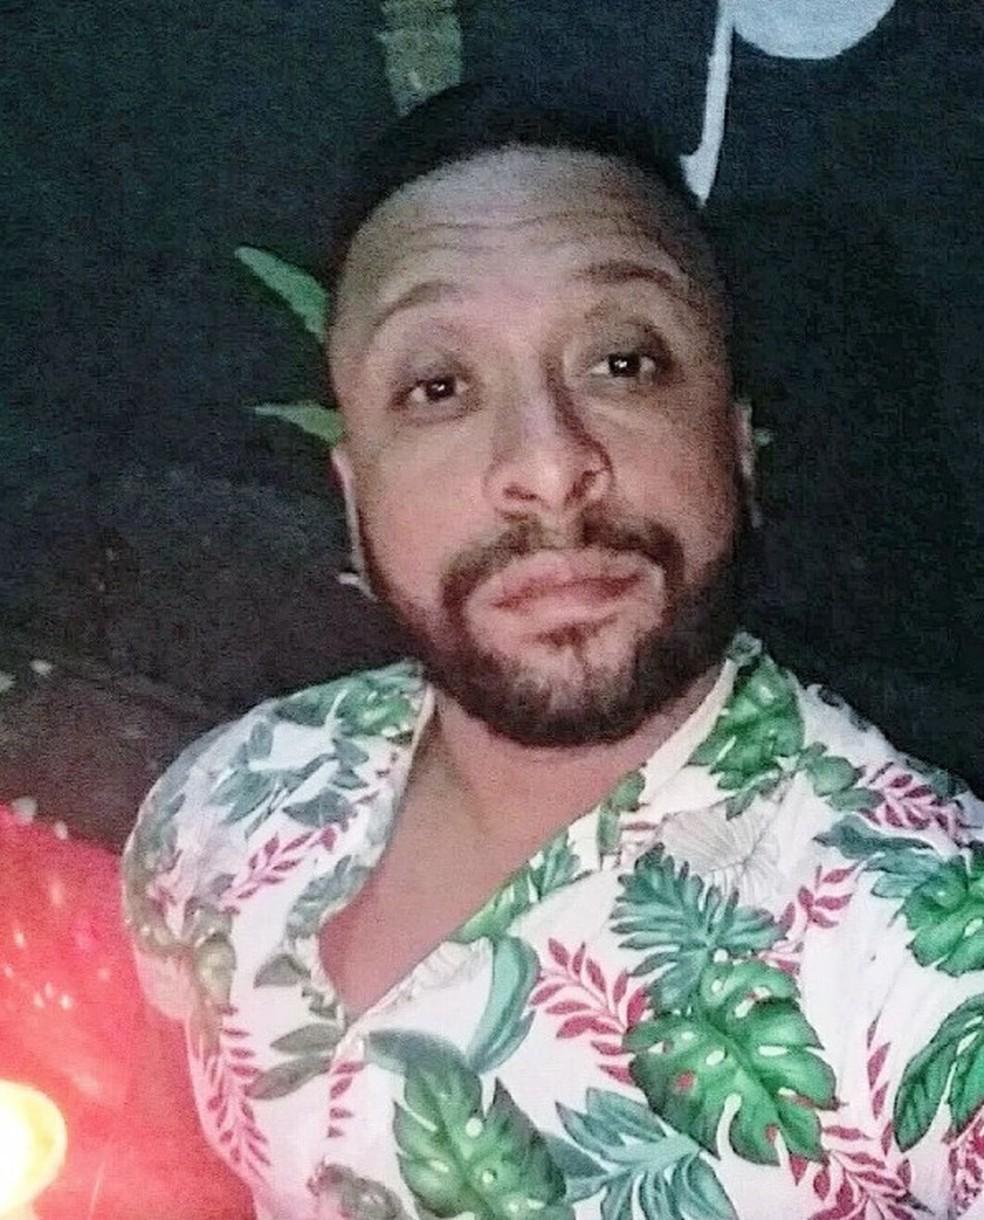 Ton Ferreira de 34 anos cantor sertanejo e est desaparecido Foto Divulgao